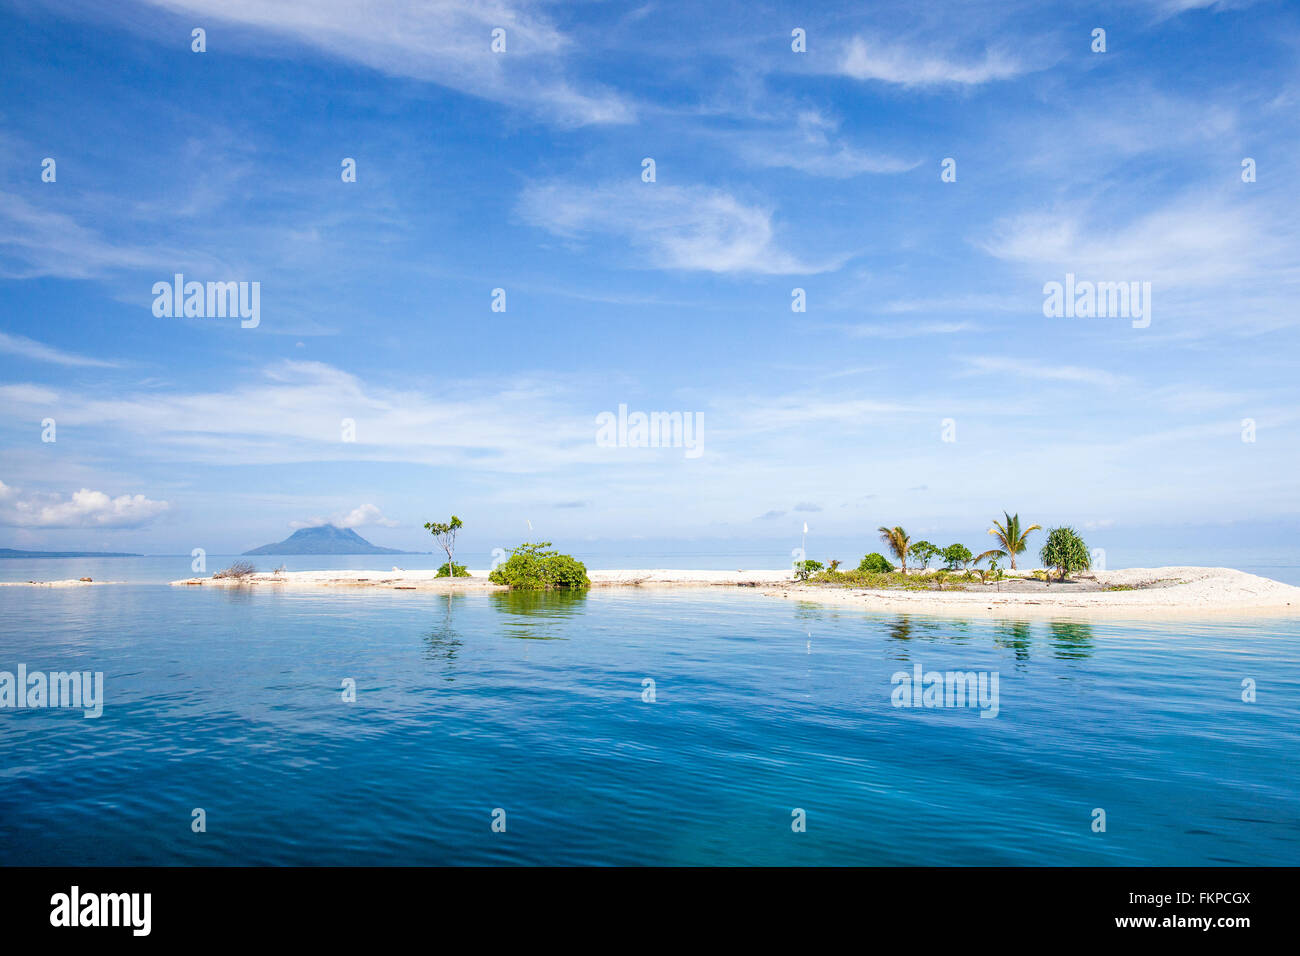 Breathaking Blick auf Fastofiri Island in den Molukken (Molukken) von Ost-Indonesien. Stockfoto